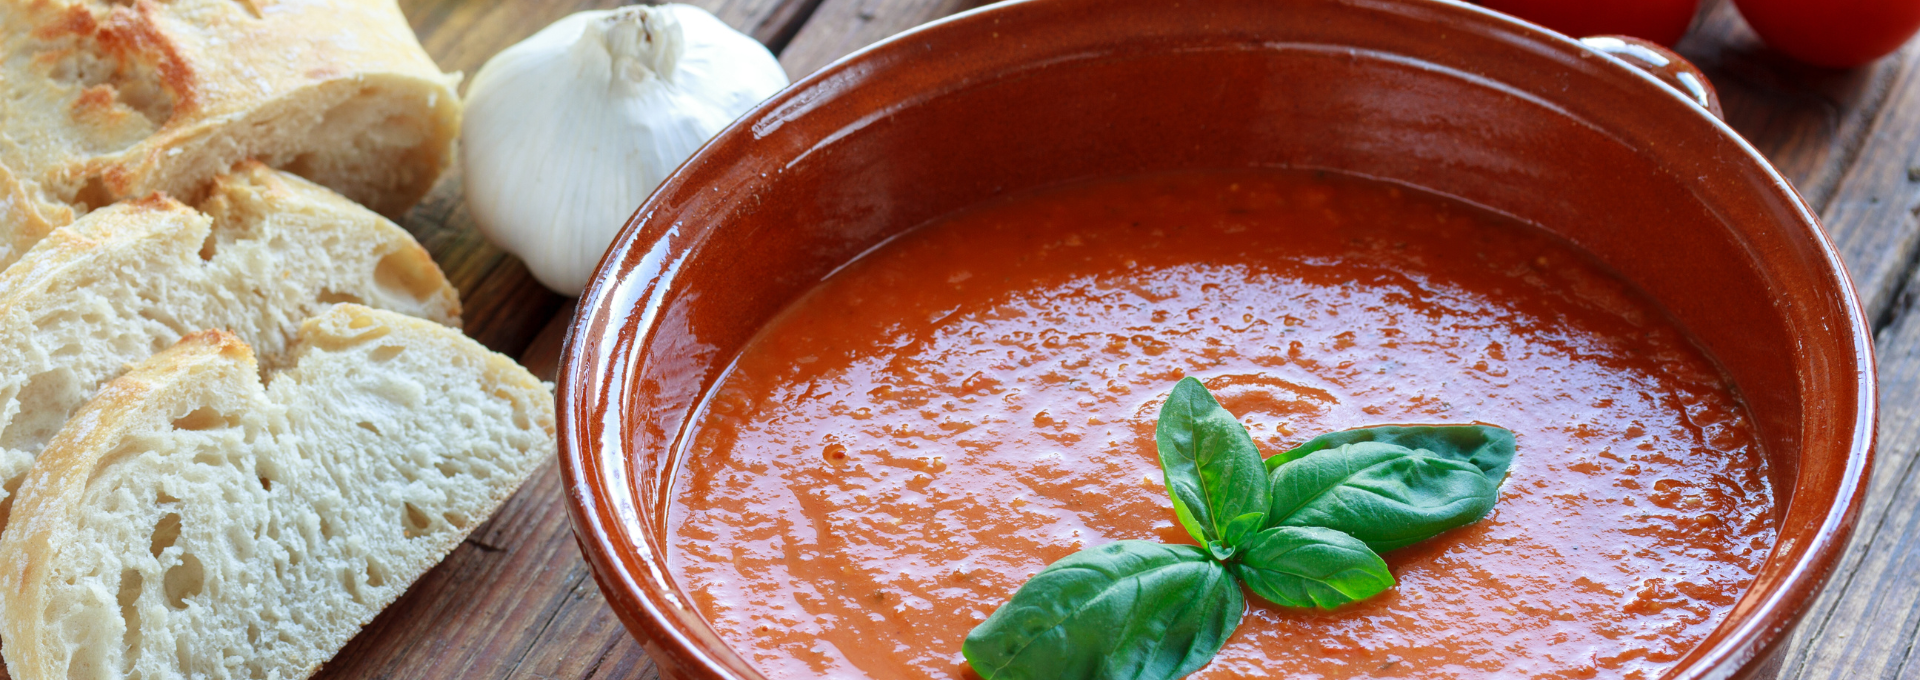 Kalte italienische Suppe